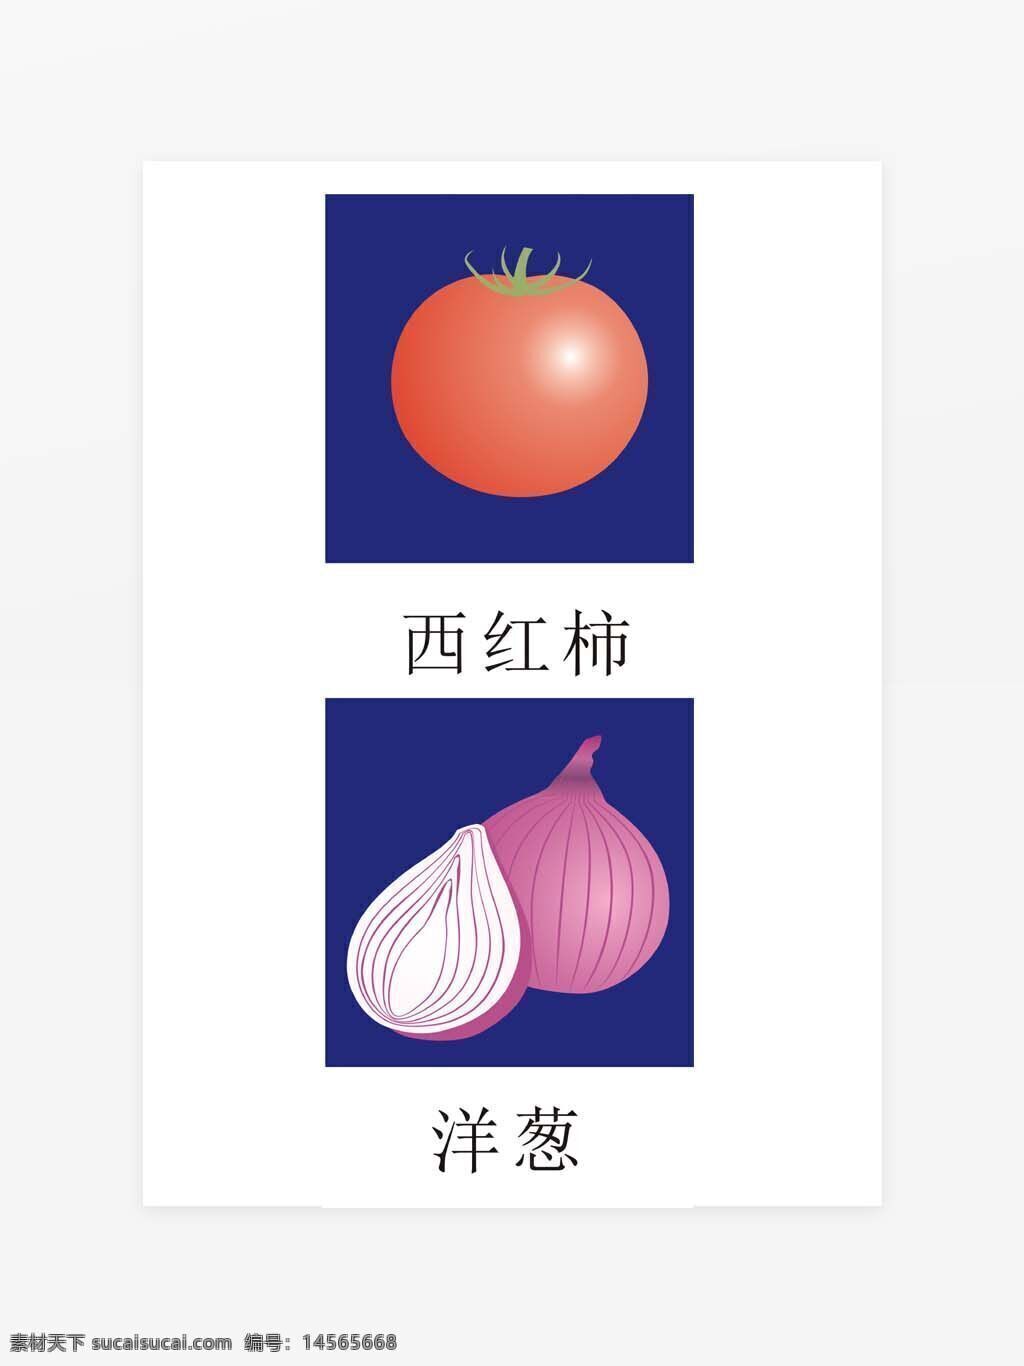 蔬菜矢量图 西红柿矢量图 番茄矢量图 洋葱矢量图 葱头矢量图 蔬菜图标 可变大小 超市、菜市场食品图标